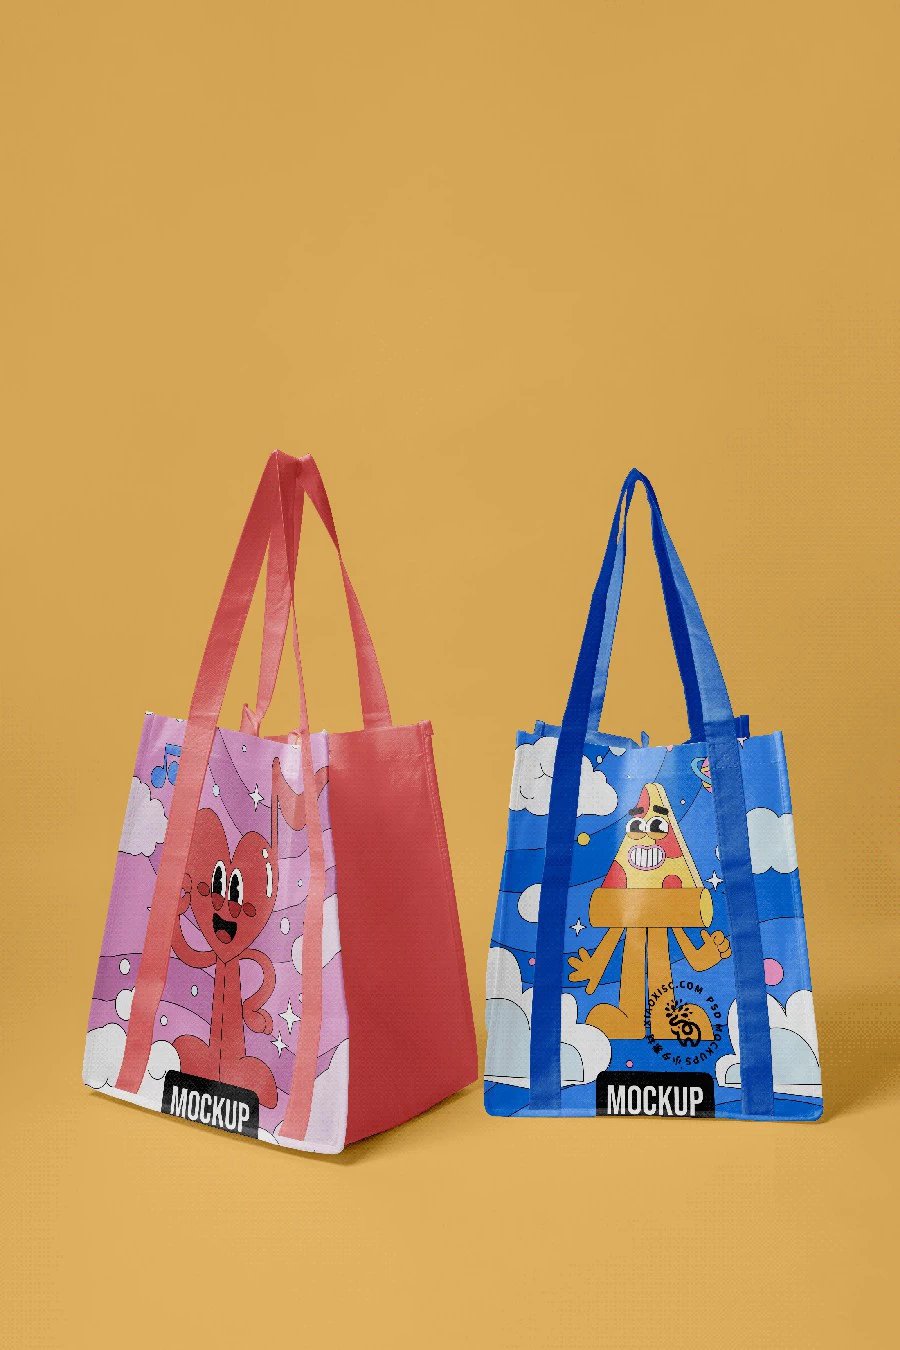 品牌环保塑料手提袋编织袋购物袋vi多角度展示智能样机PSD素材【028】